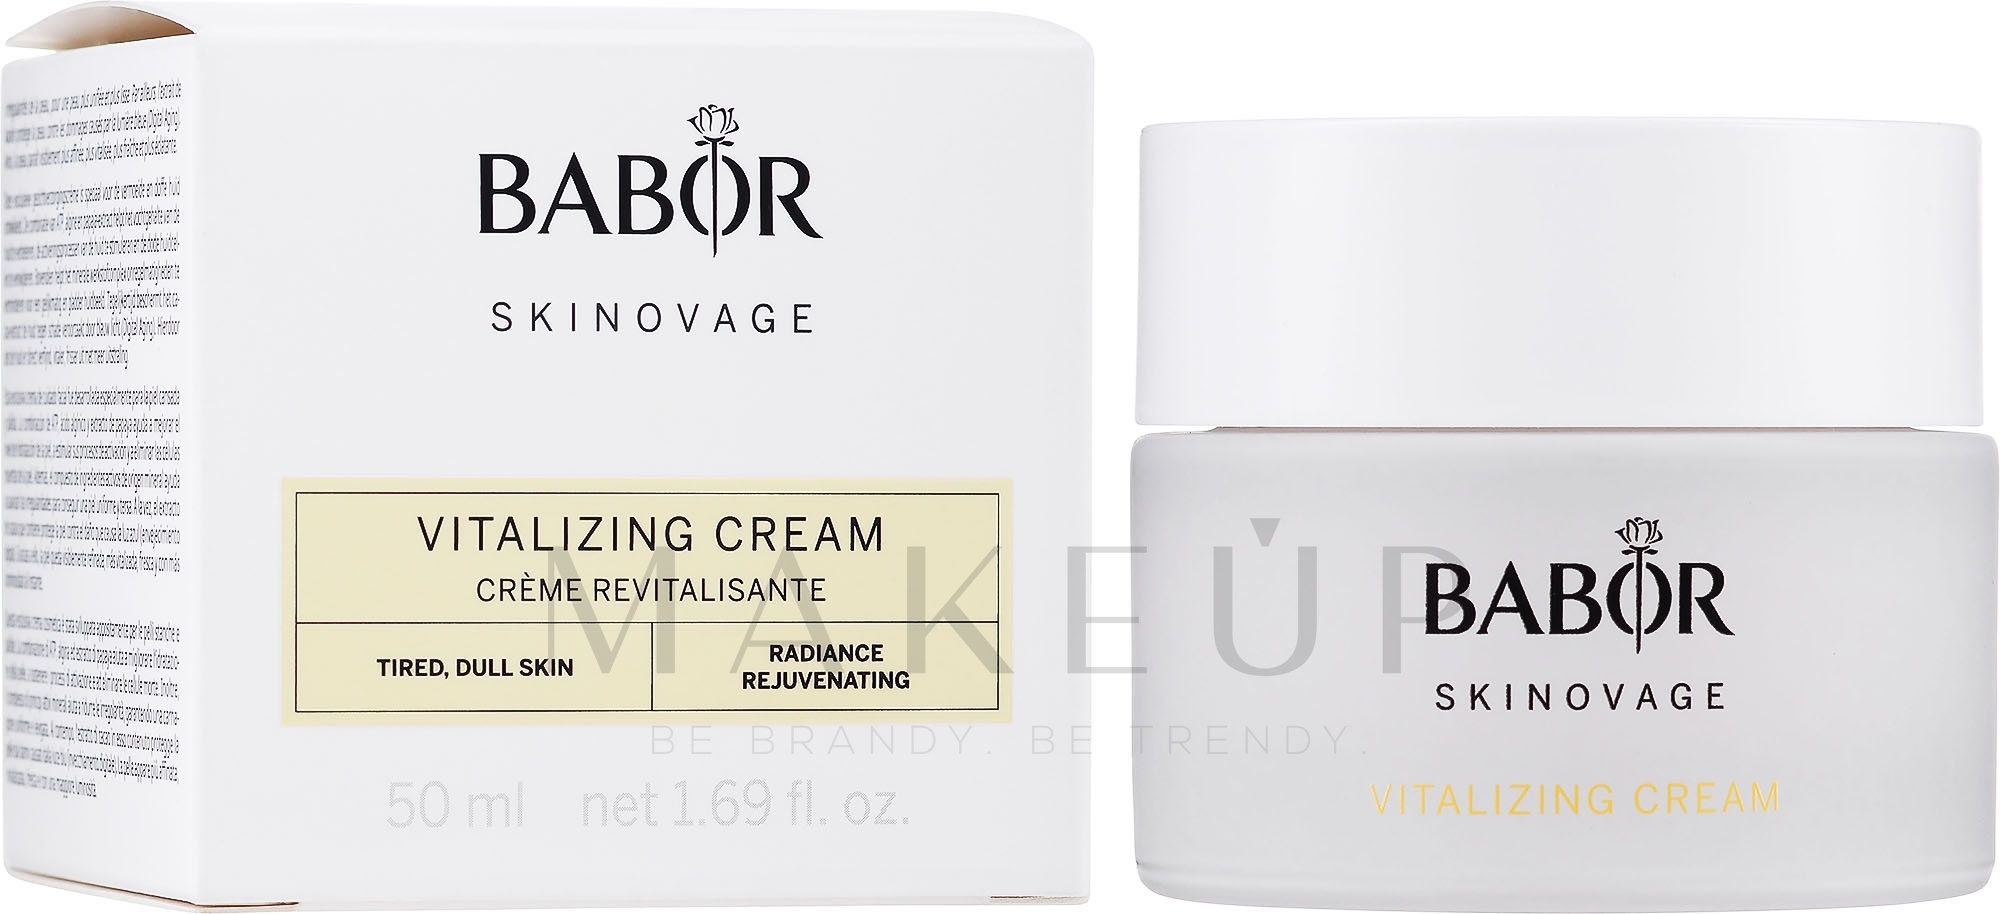 Gesichtspflegecreme zur Vitalisierung müder und fahler Haut - Babor Skinovage Vitalizing Cream — Foto 50 ml